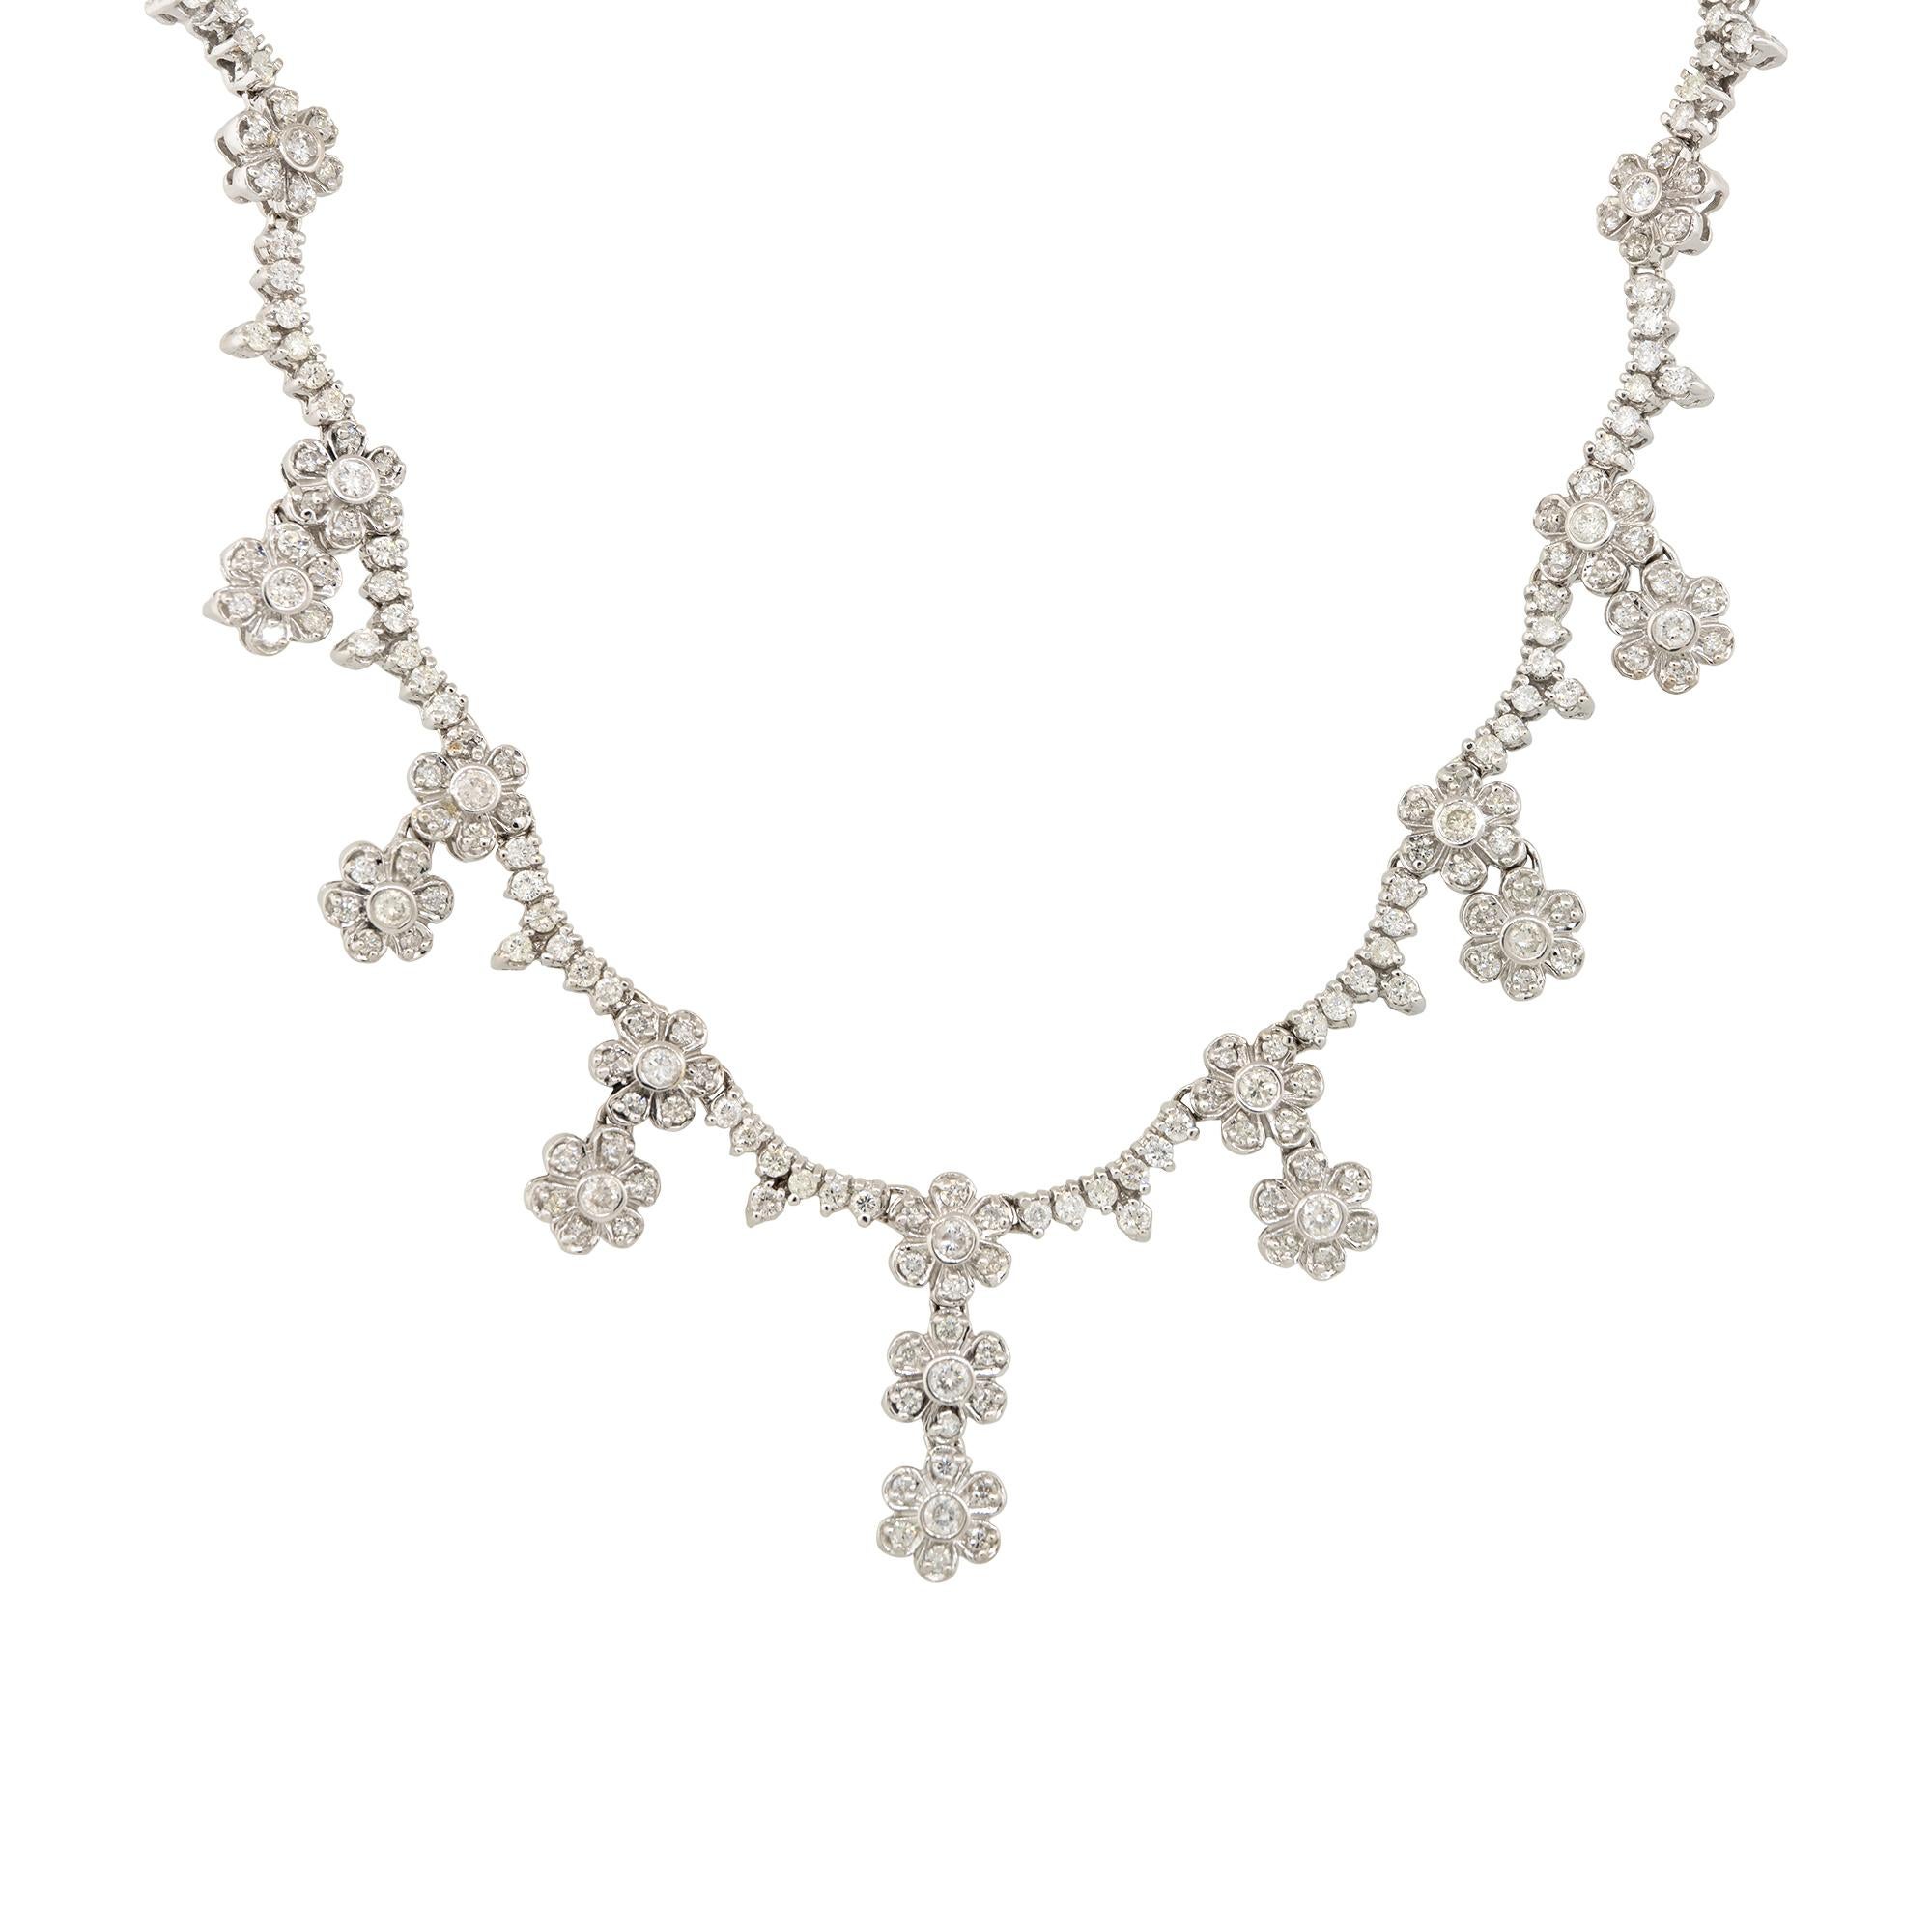 Diese mehrblütige Diamant-Tropfen-Halskette ist das perfekte Schmuckstück für jemanden, der Blumen und Diamanten liebt! Diese Halskette ist mit runden Diamanten im Brillantschliff gefasst, und die Art und Weise, wie sie gefasst sind, verleiht ihr